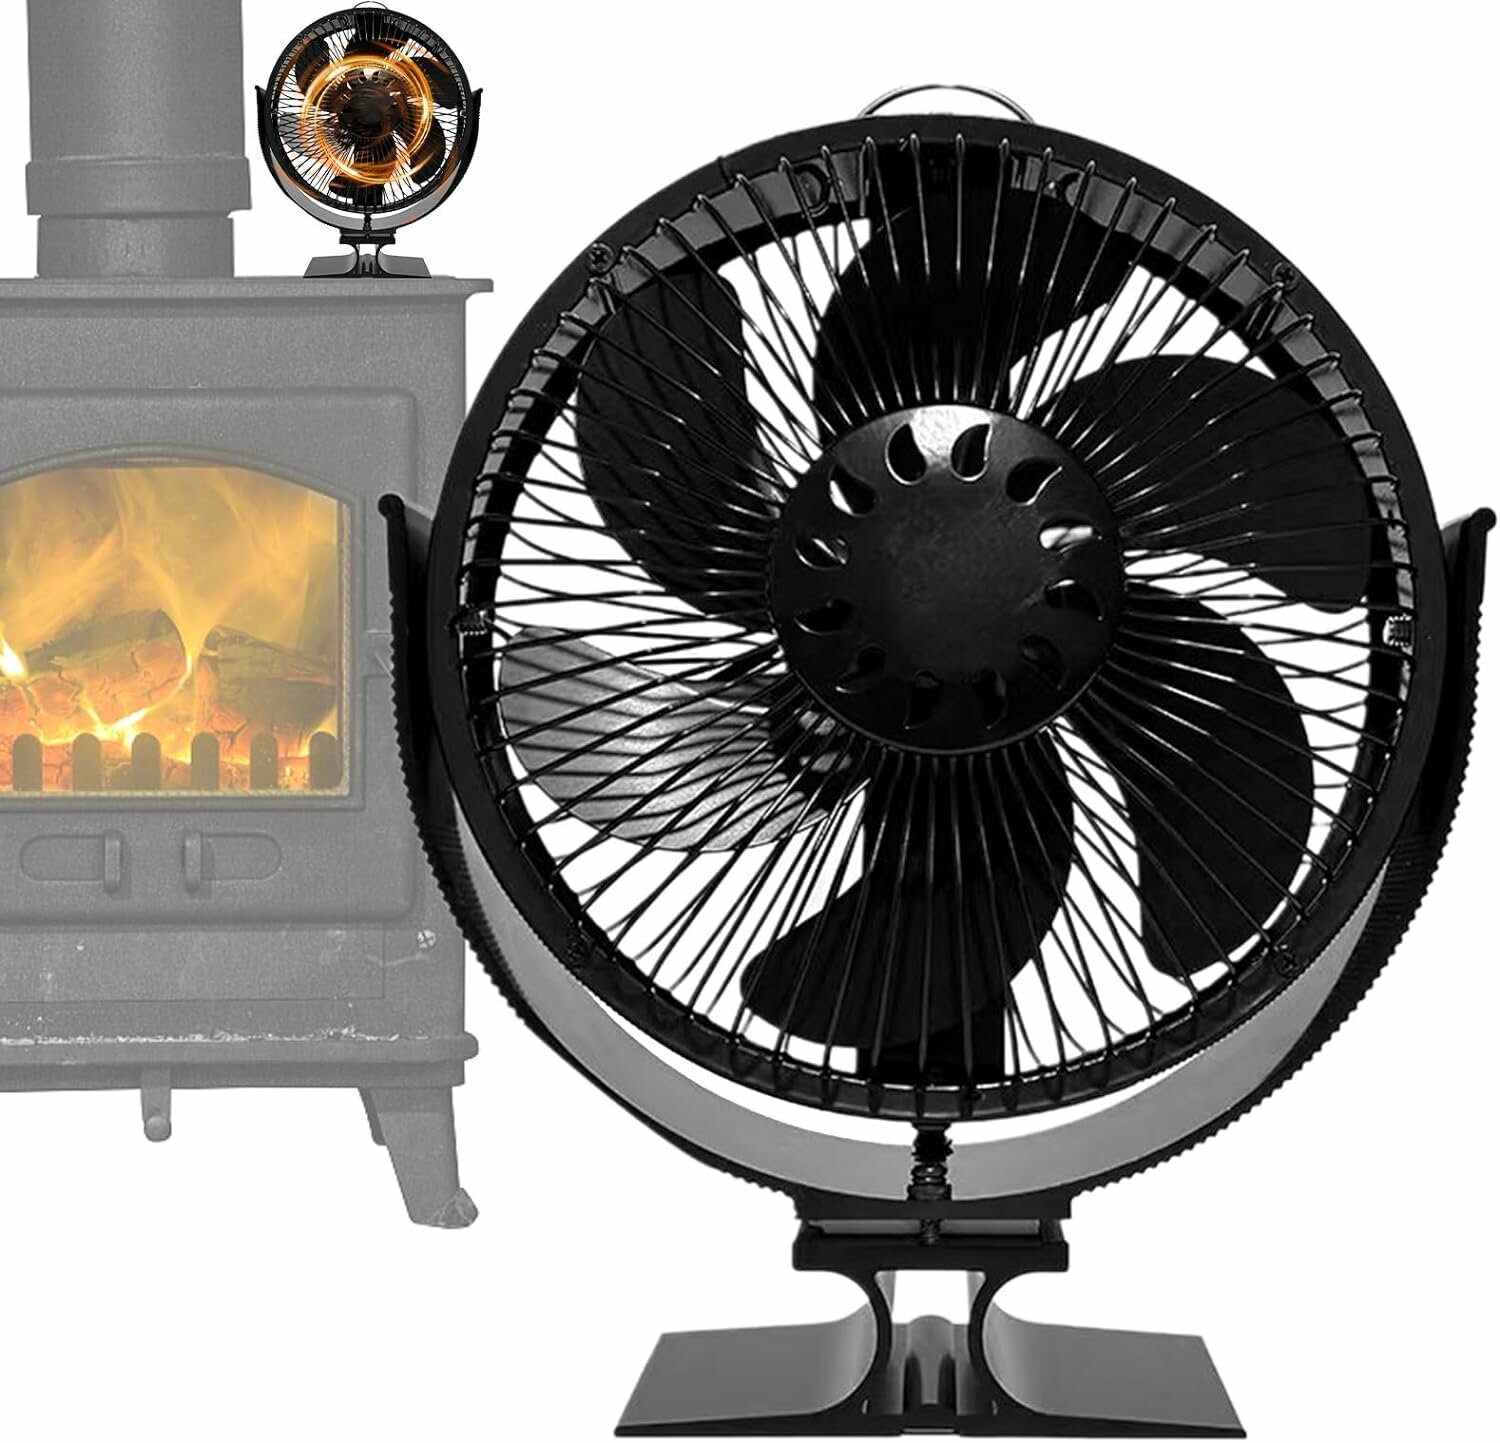 Ventilatore per stufa con 6 pale e rotazione a 360° alimentato a calore con copertura. Ventola ecologica e portatile per un riscaldamento efficiente.